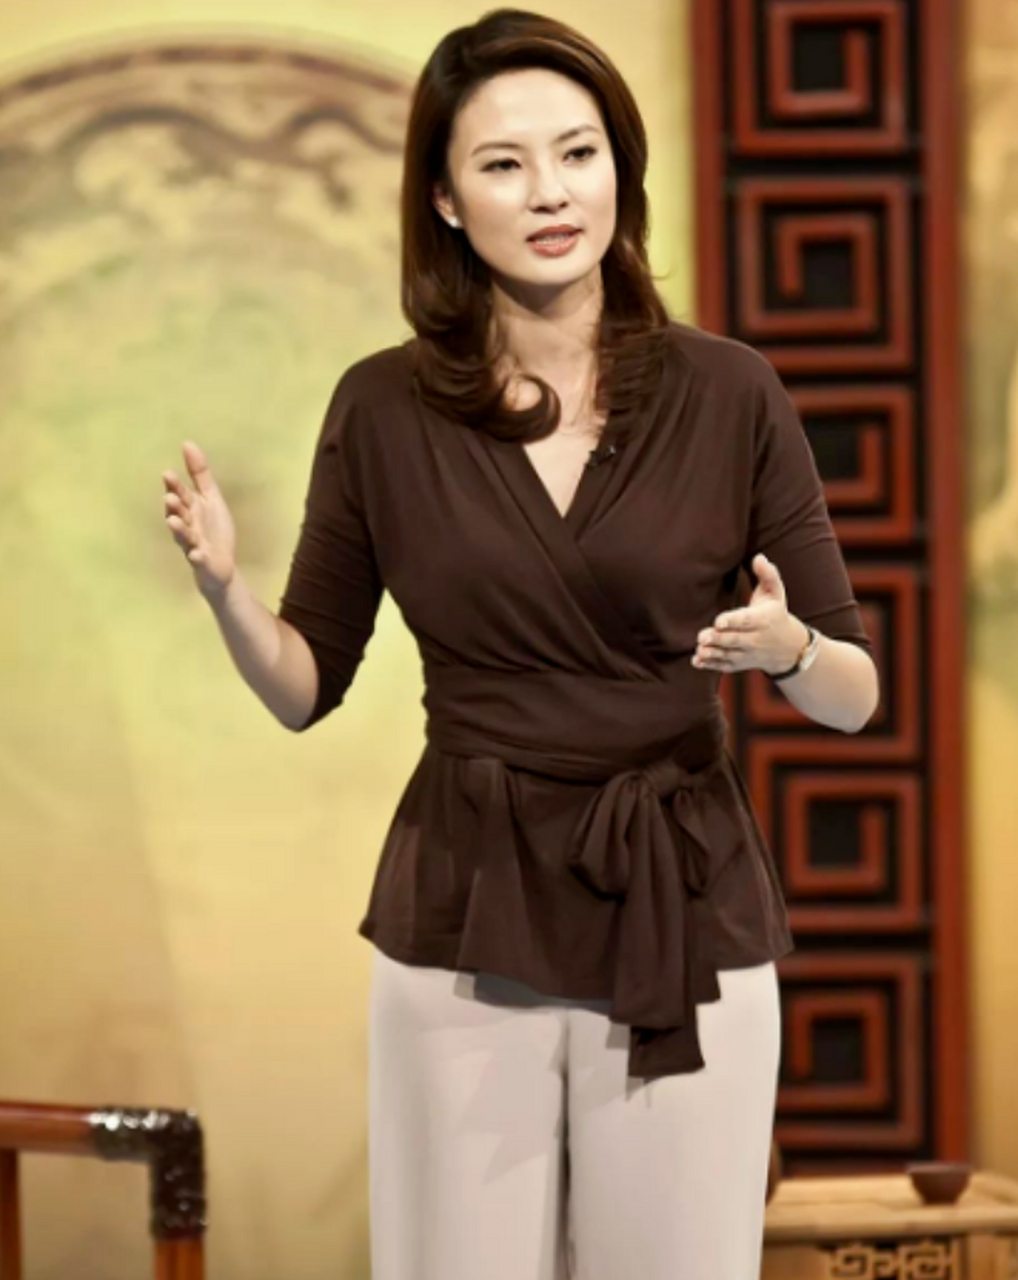 当谈到公众眼中的时尚焦点,央视主持人刘芳菲的独特穿搭风格无疑抢眼